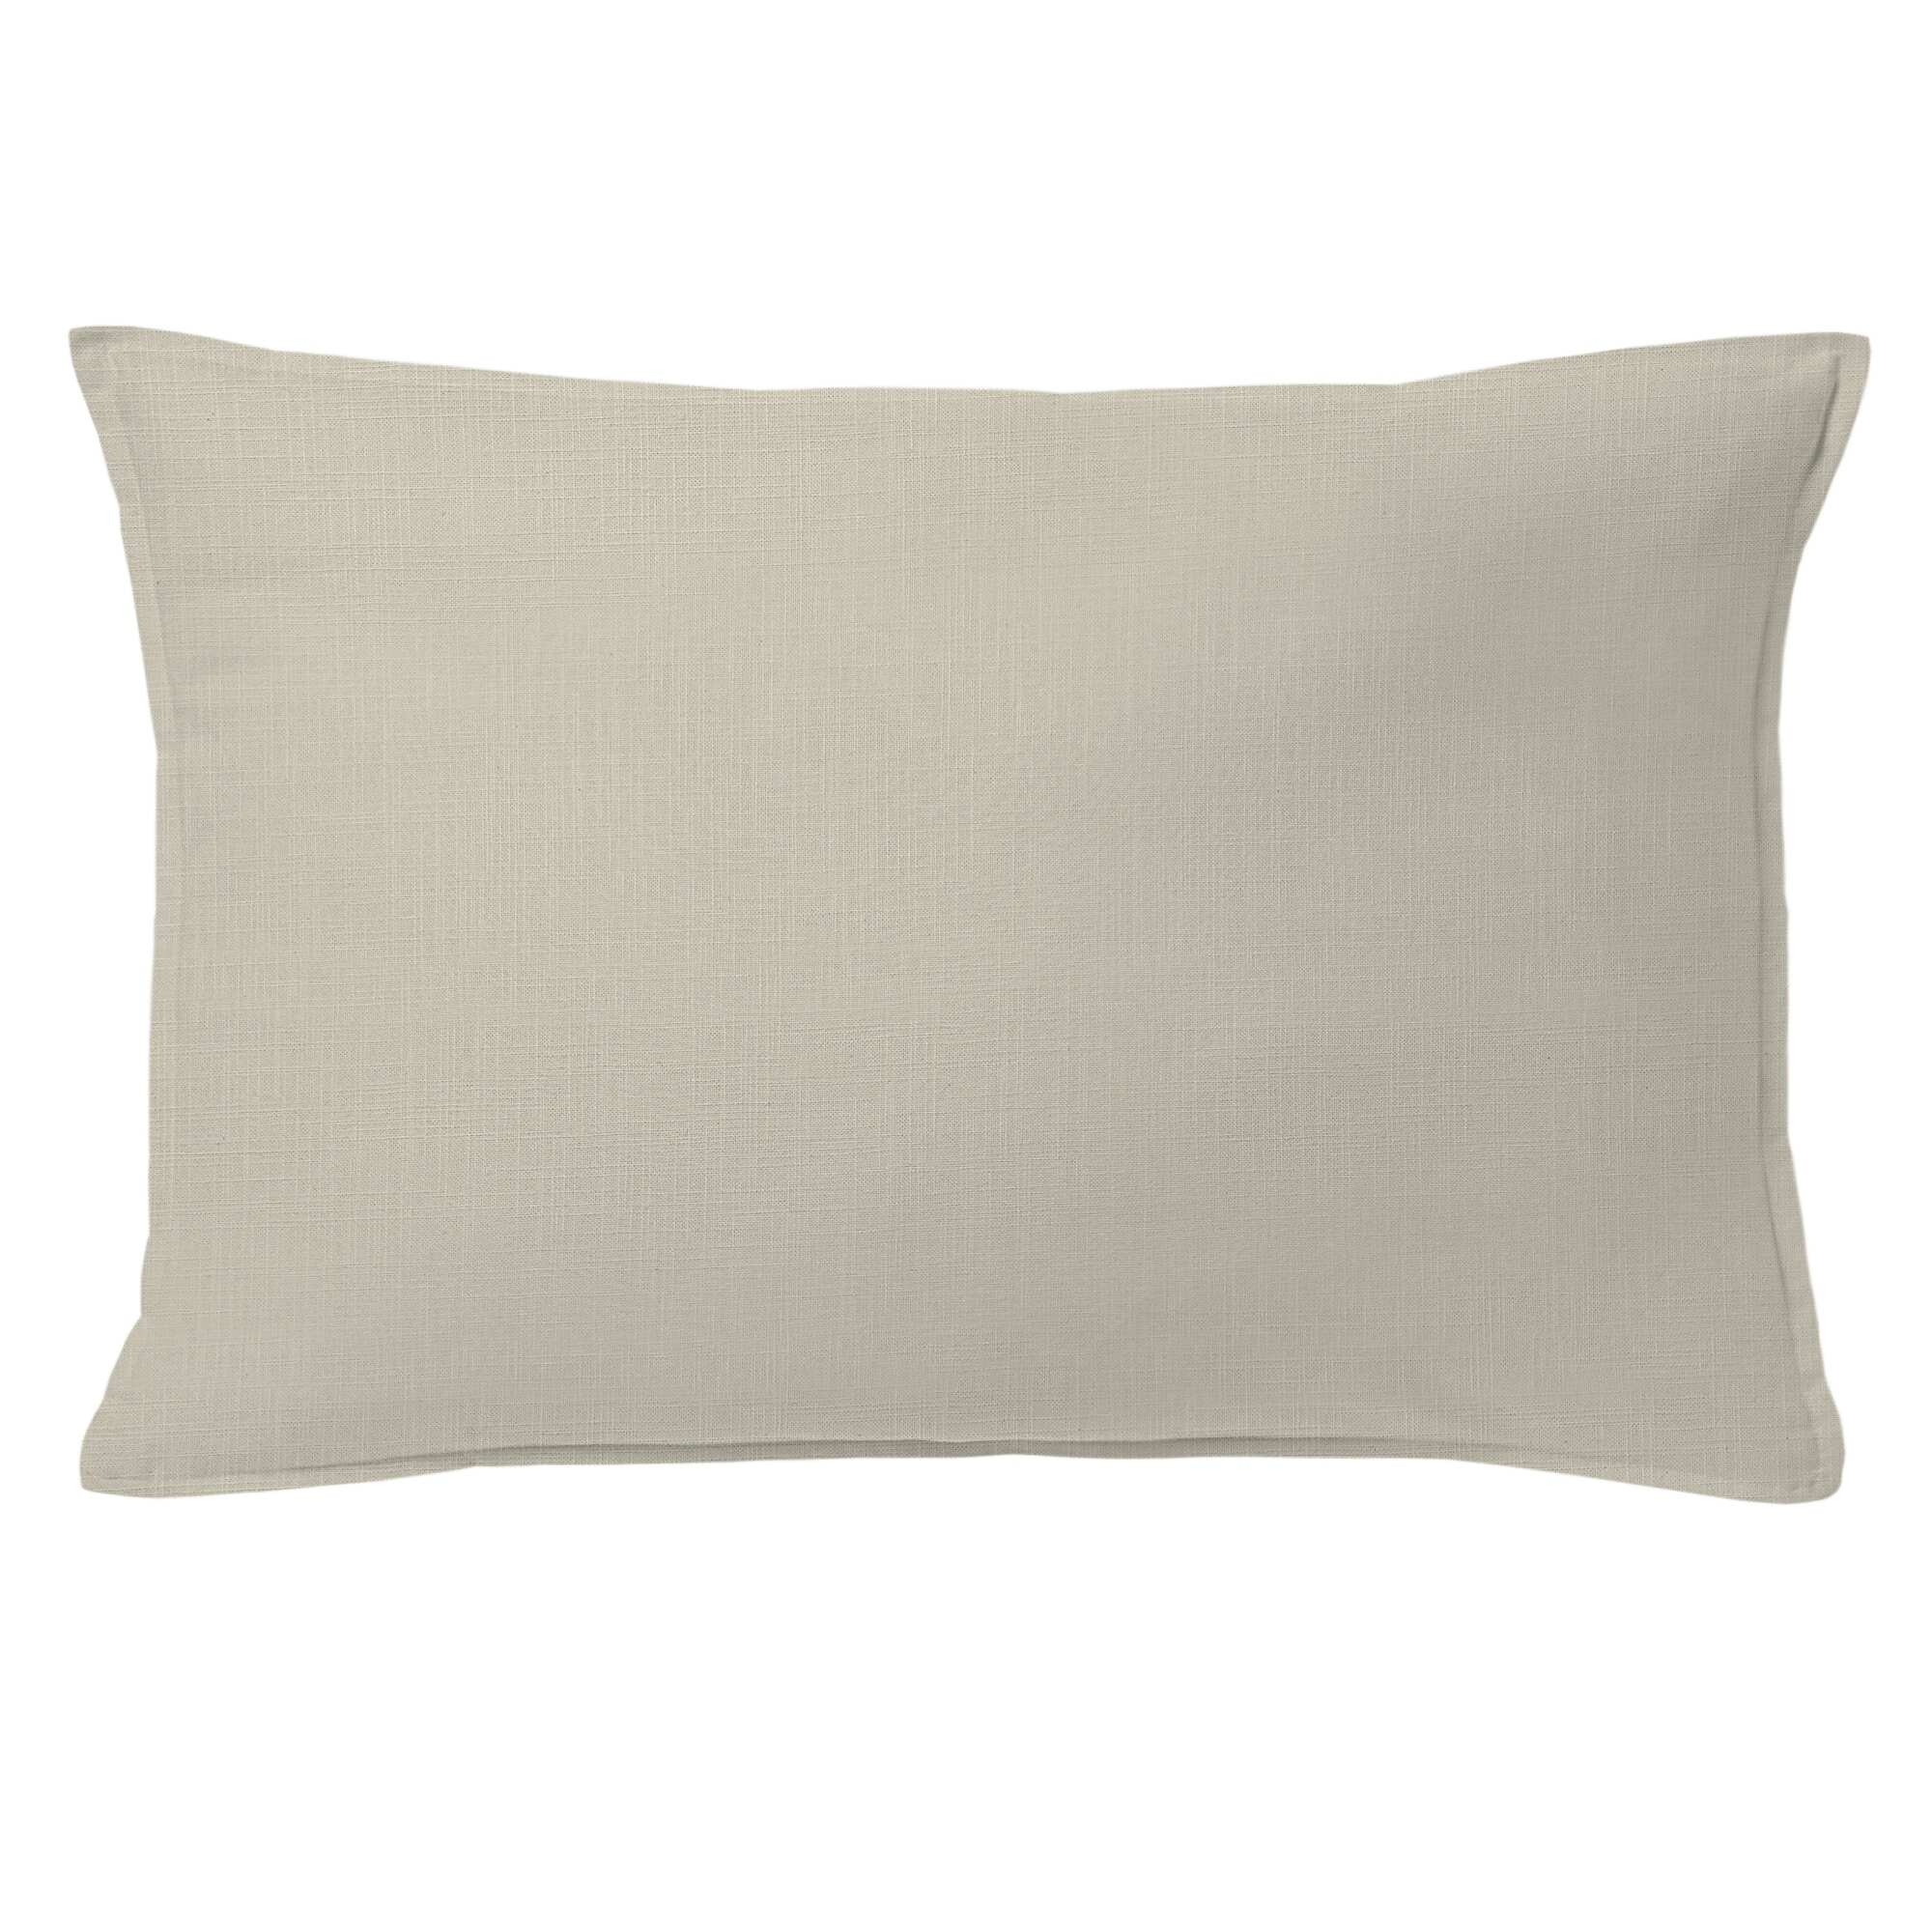 Ancebridge Vanilla Duvet Cover and Pillow Sham Set